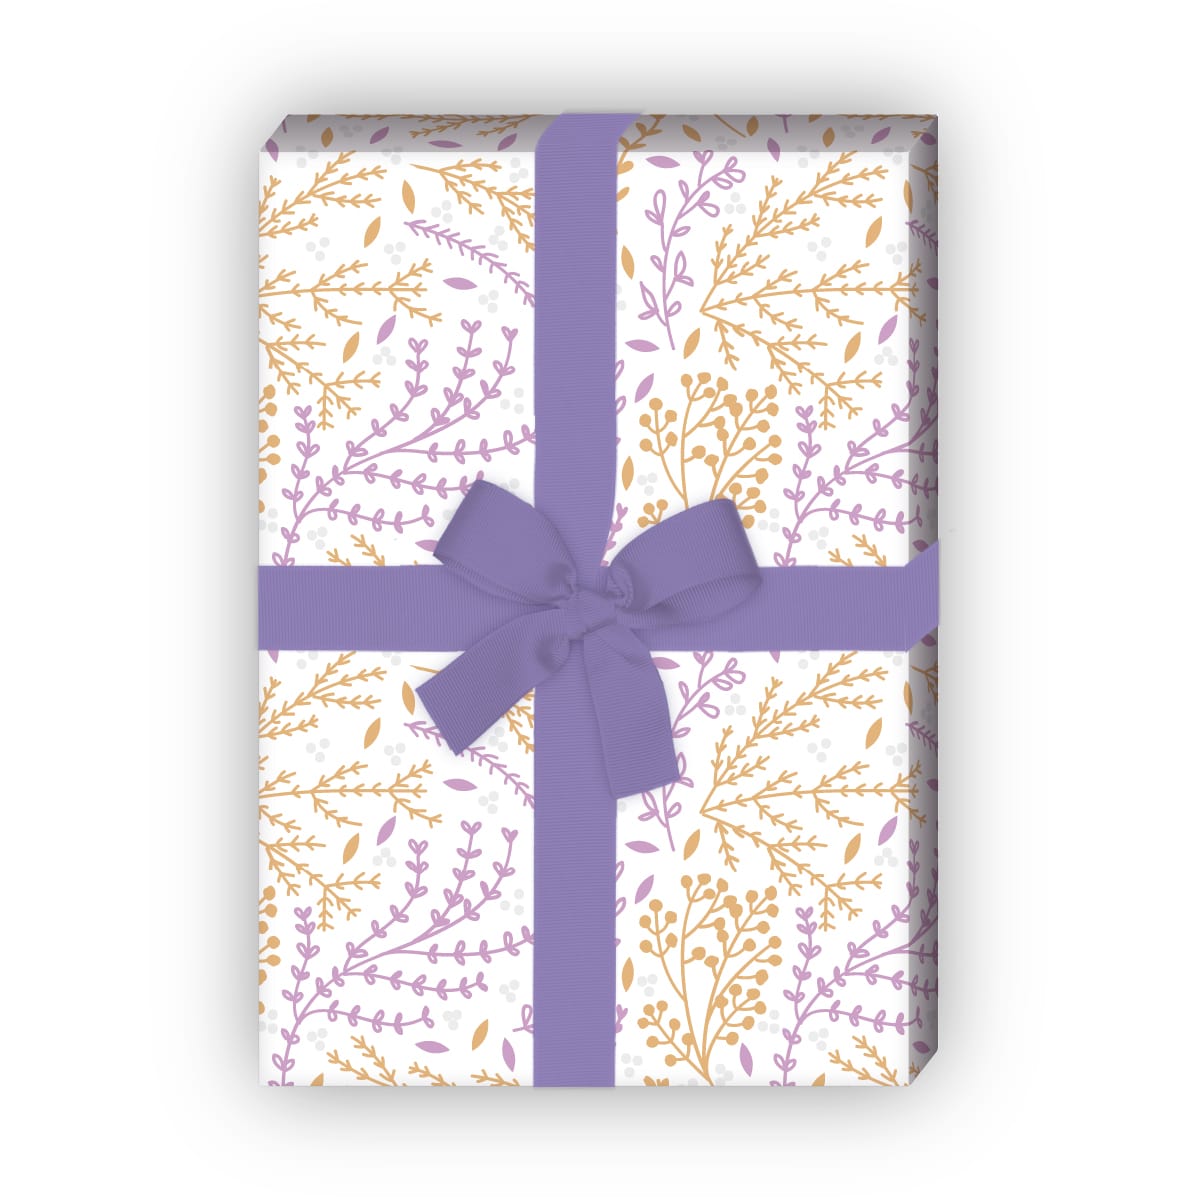 Kartenkaufrausch: Florales Geschenkpapier mit zartem aus unserer florale Papeterie in gelb